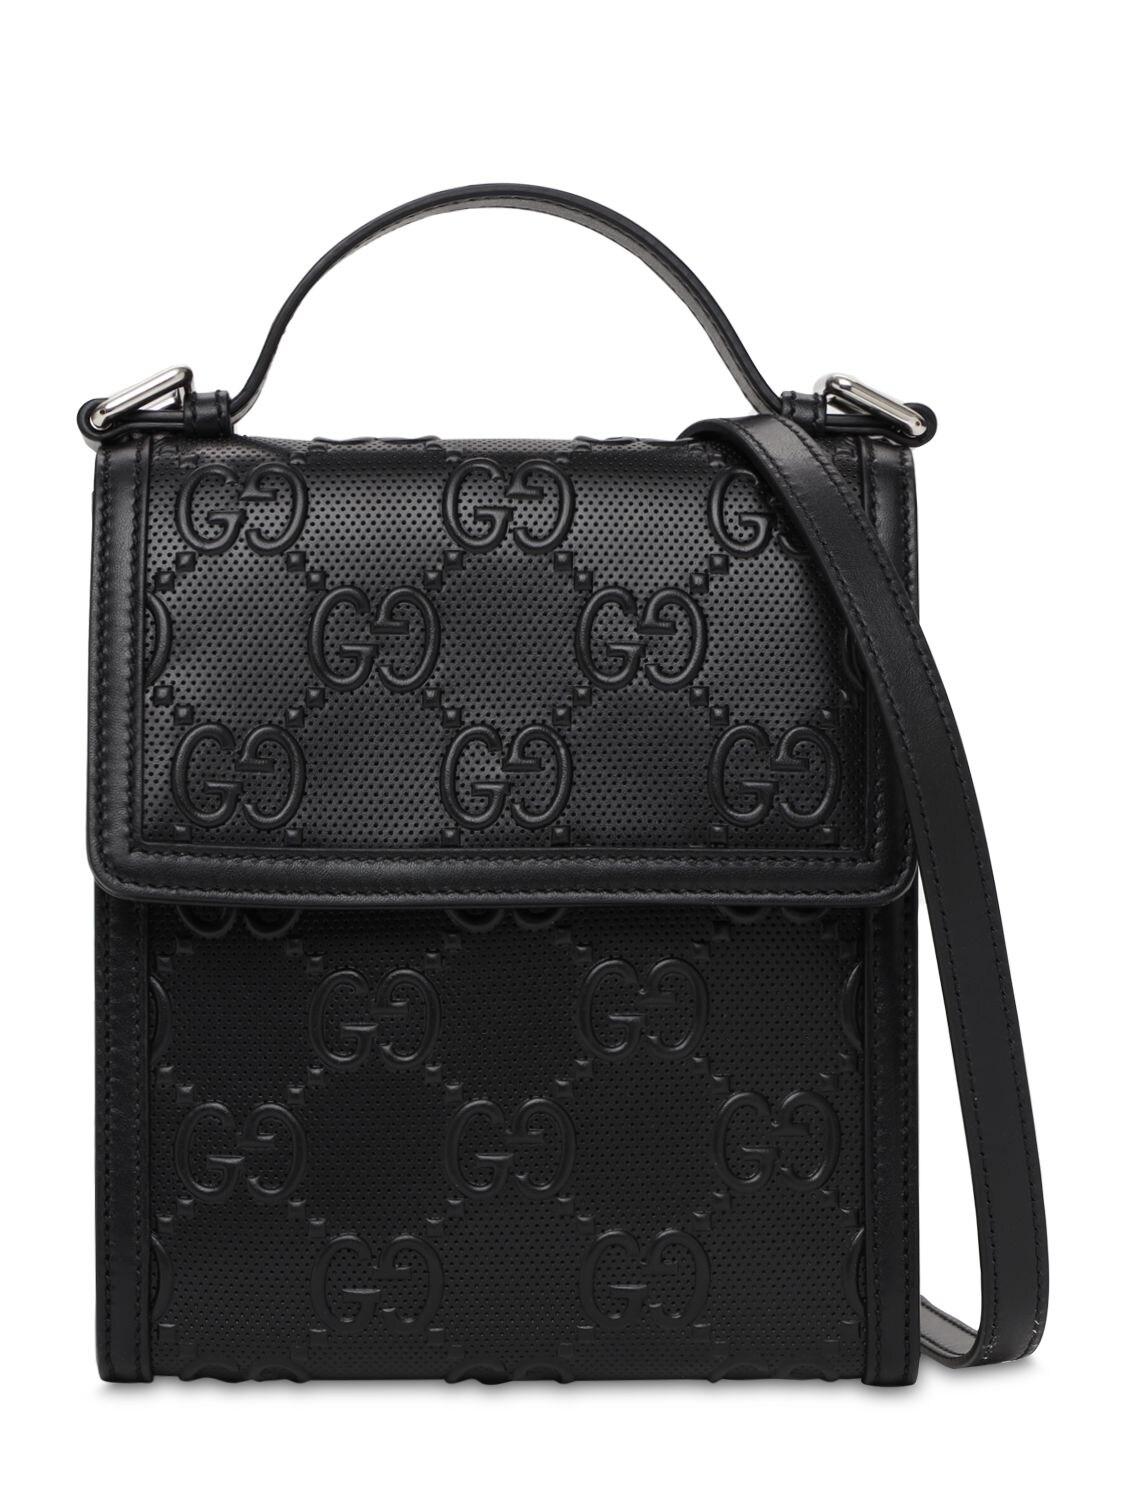 Gucci Black GG Branded Leather Messenger Bag for Men | Lyst